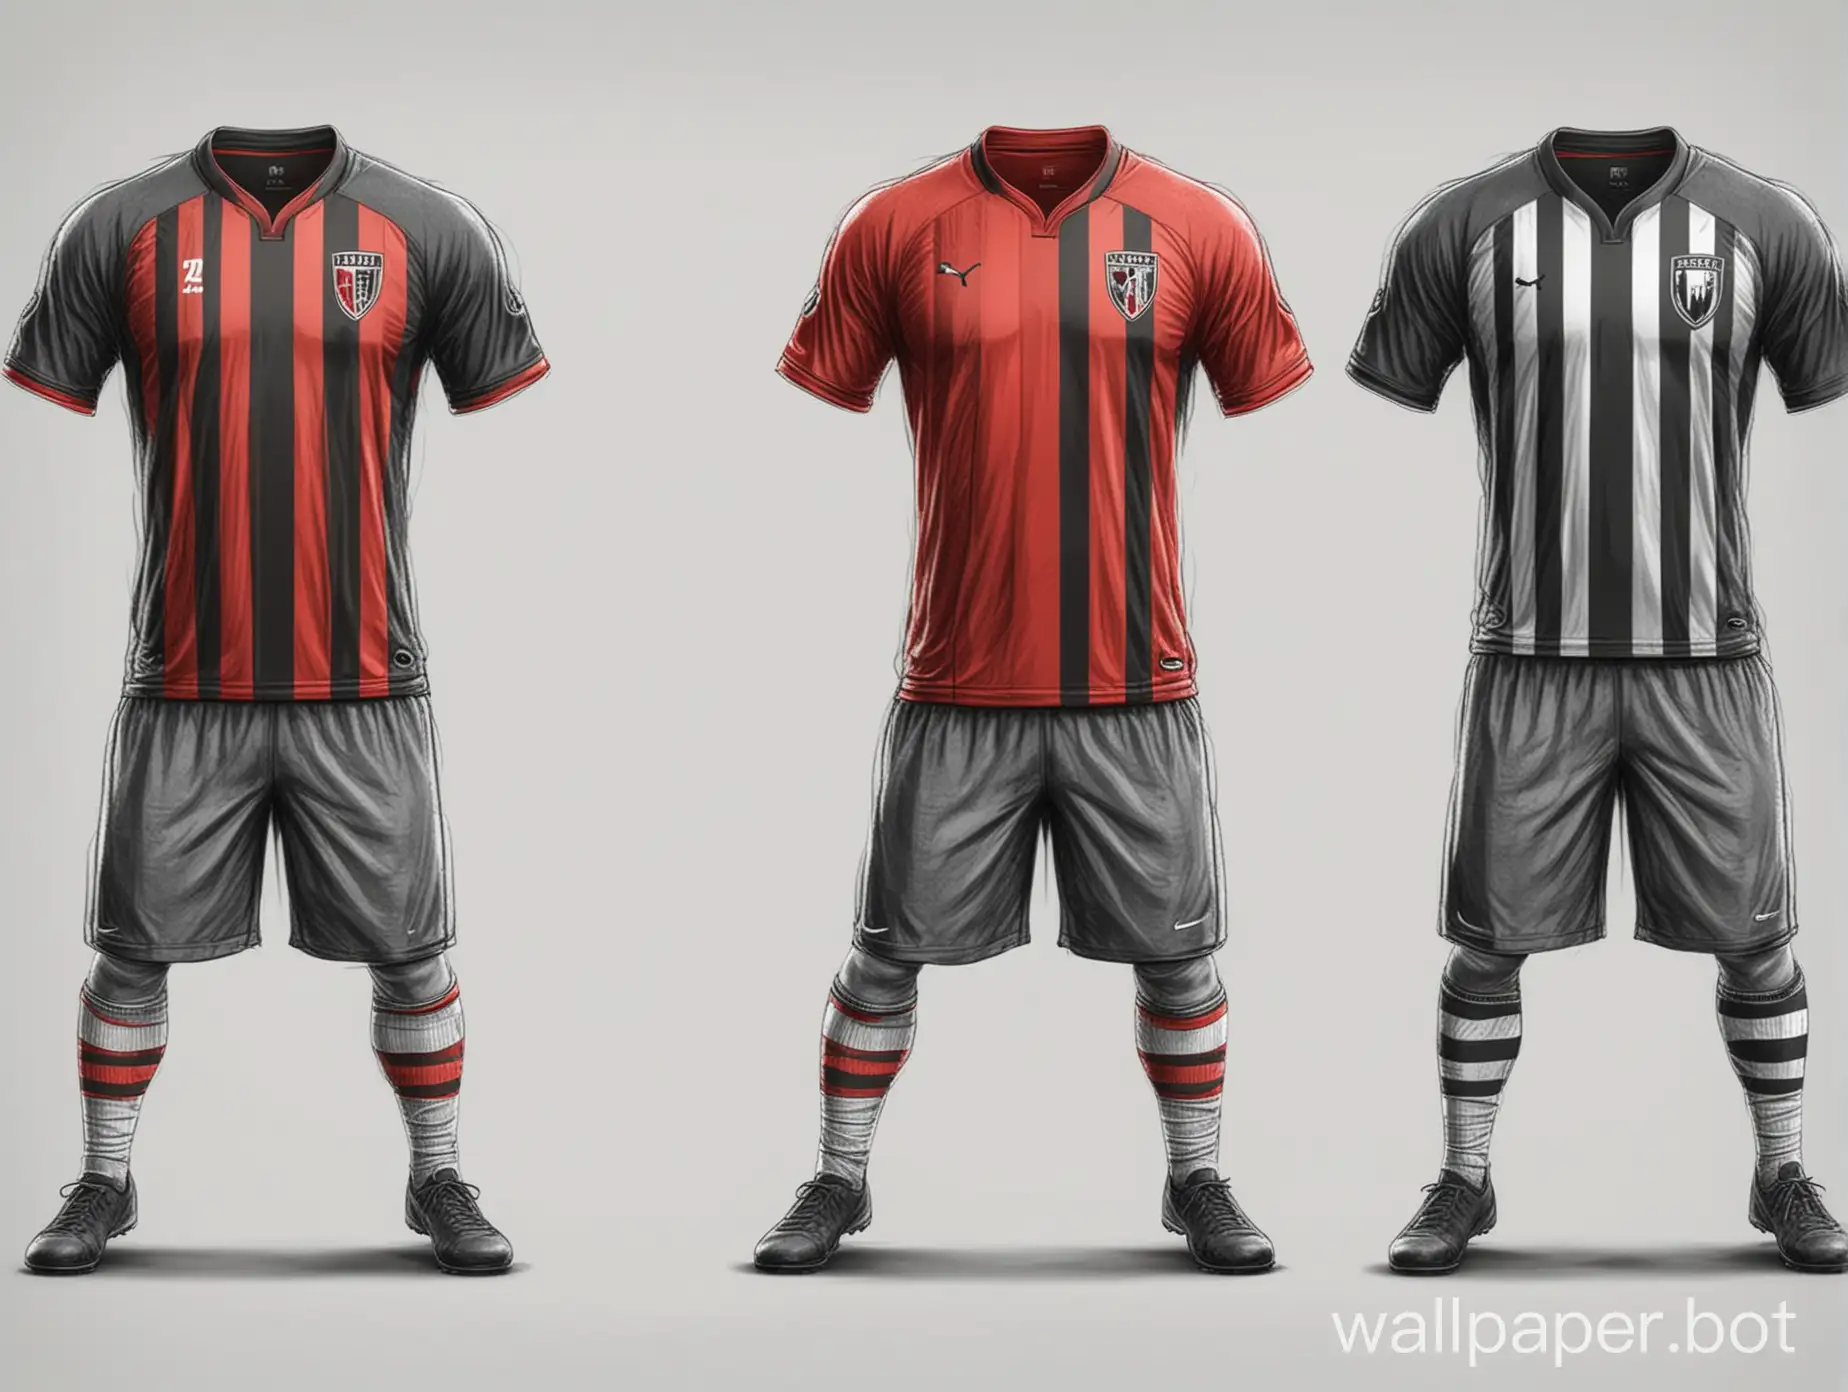 sketch Soccer uniform 2 variants red-black-gray color vertical stripes on white background sketch concept form